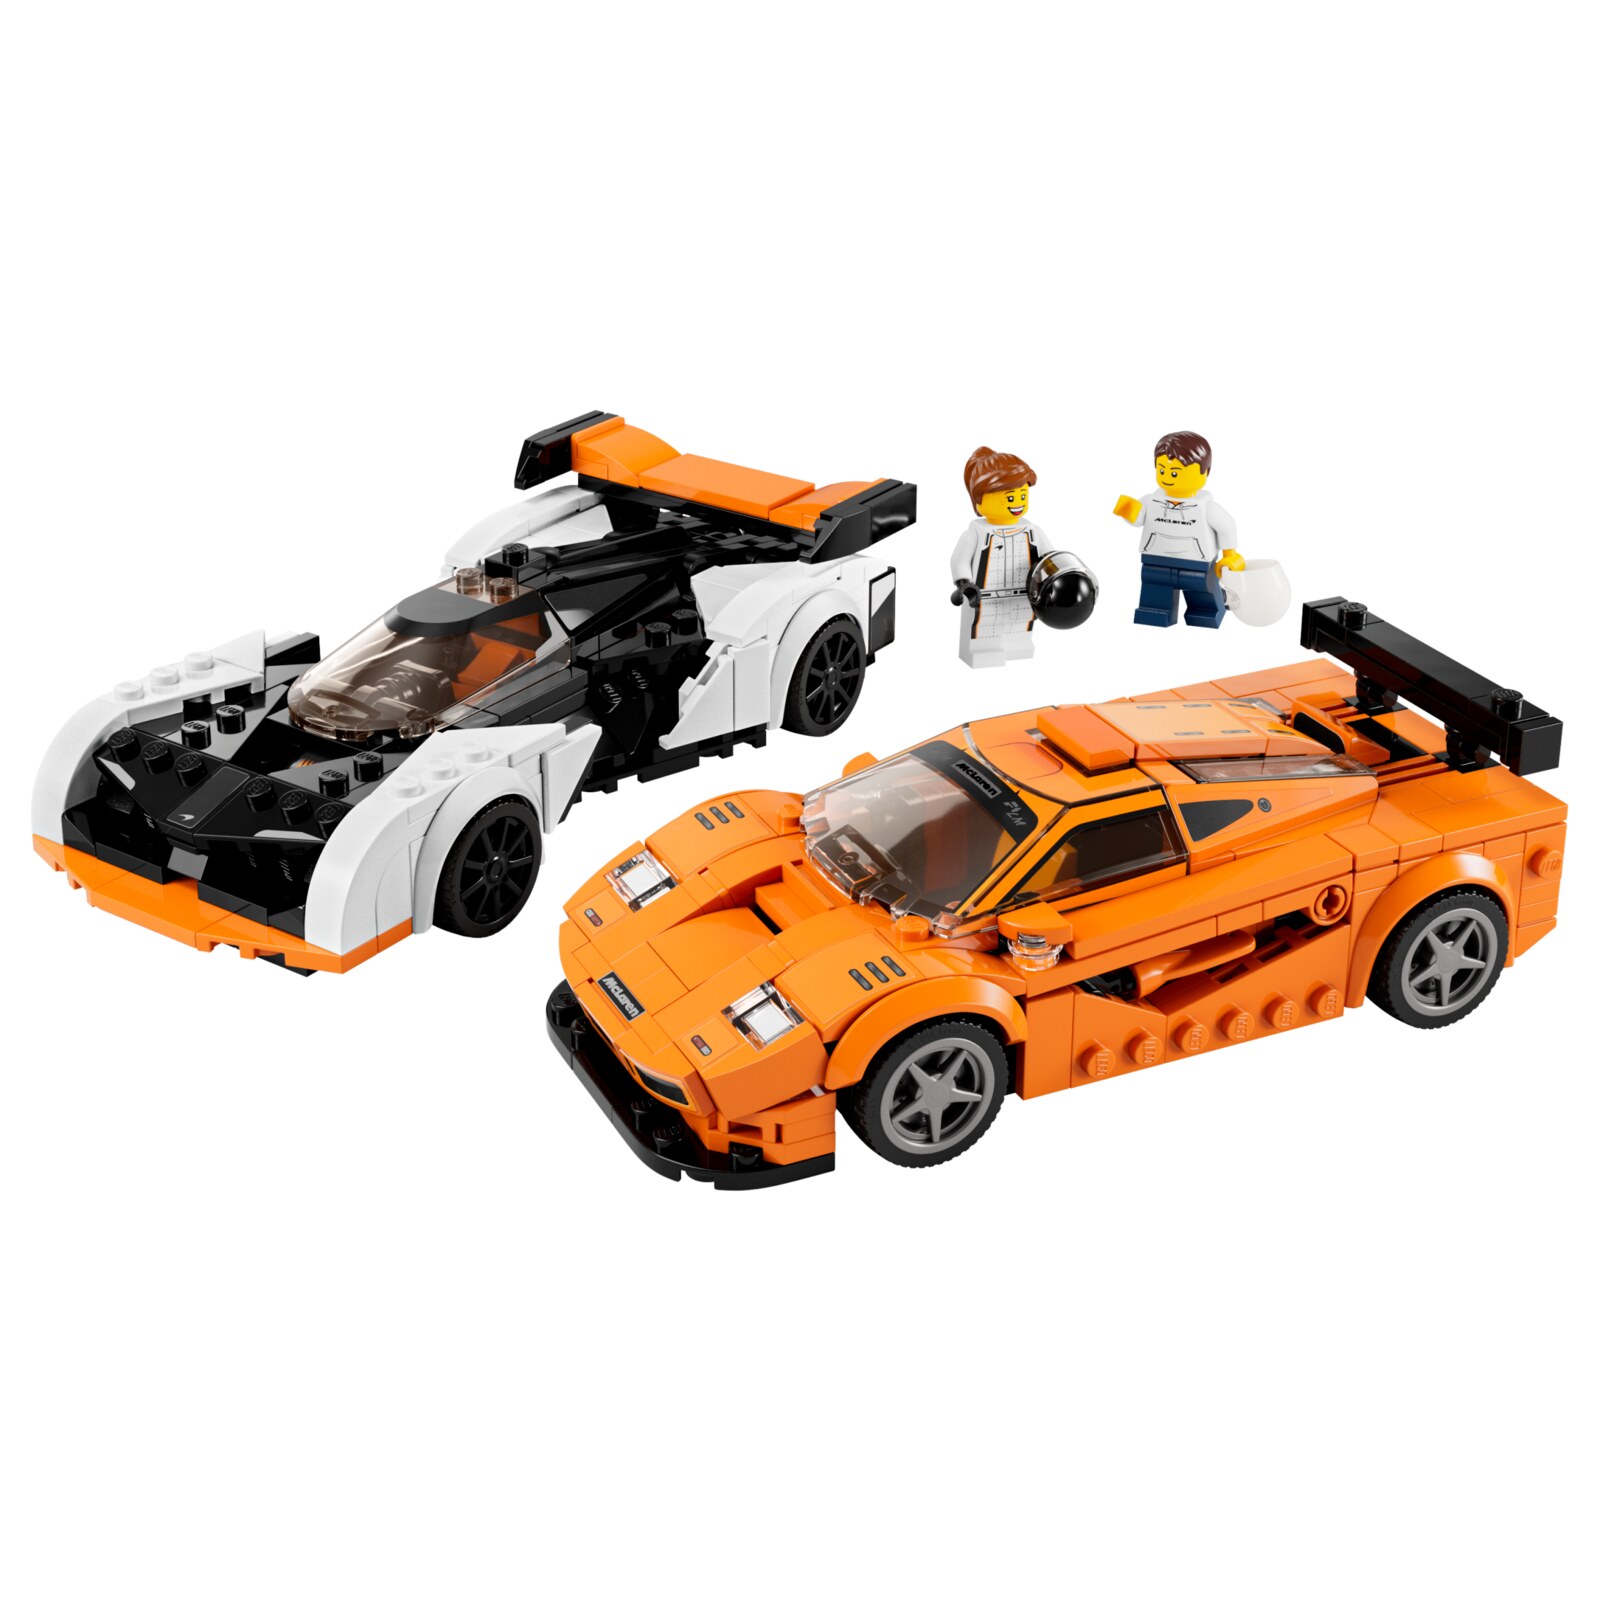 Конструктор LEGO ЛЕГО Speed Champions McLaren F1, 581 деталей, 76918 конструктор lego speed champions 76918 макларен solus gt и макларен f1 lm